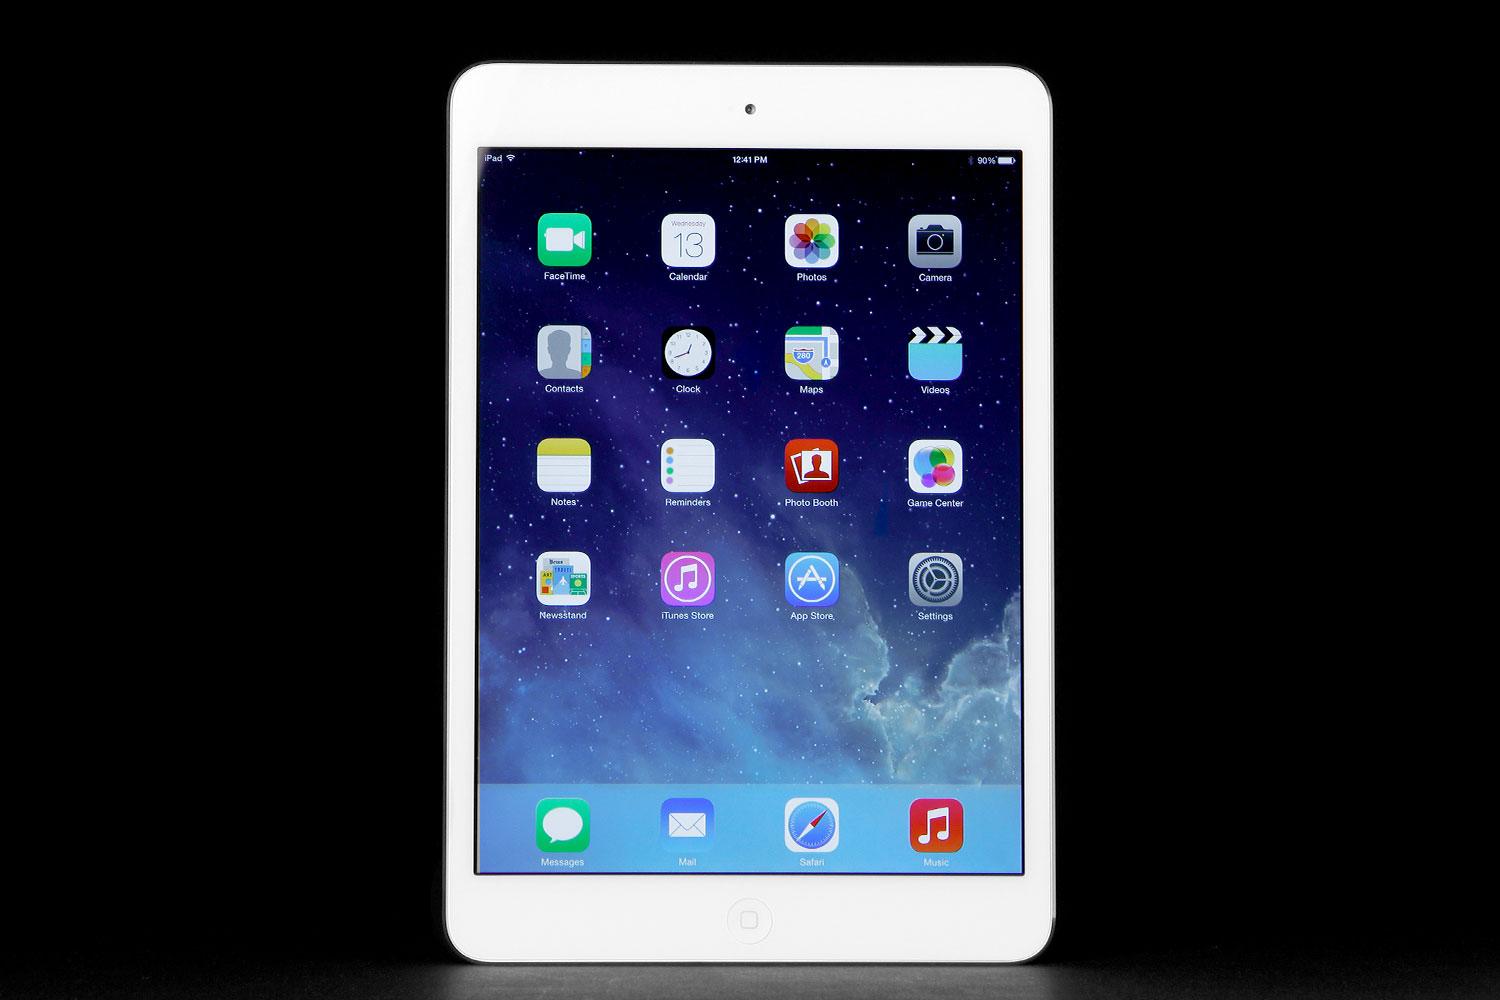 Apple iPad Mini 2 review | Digital Trends